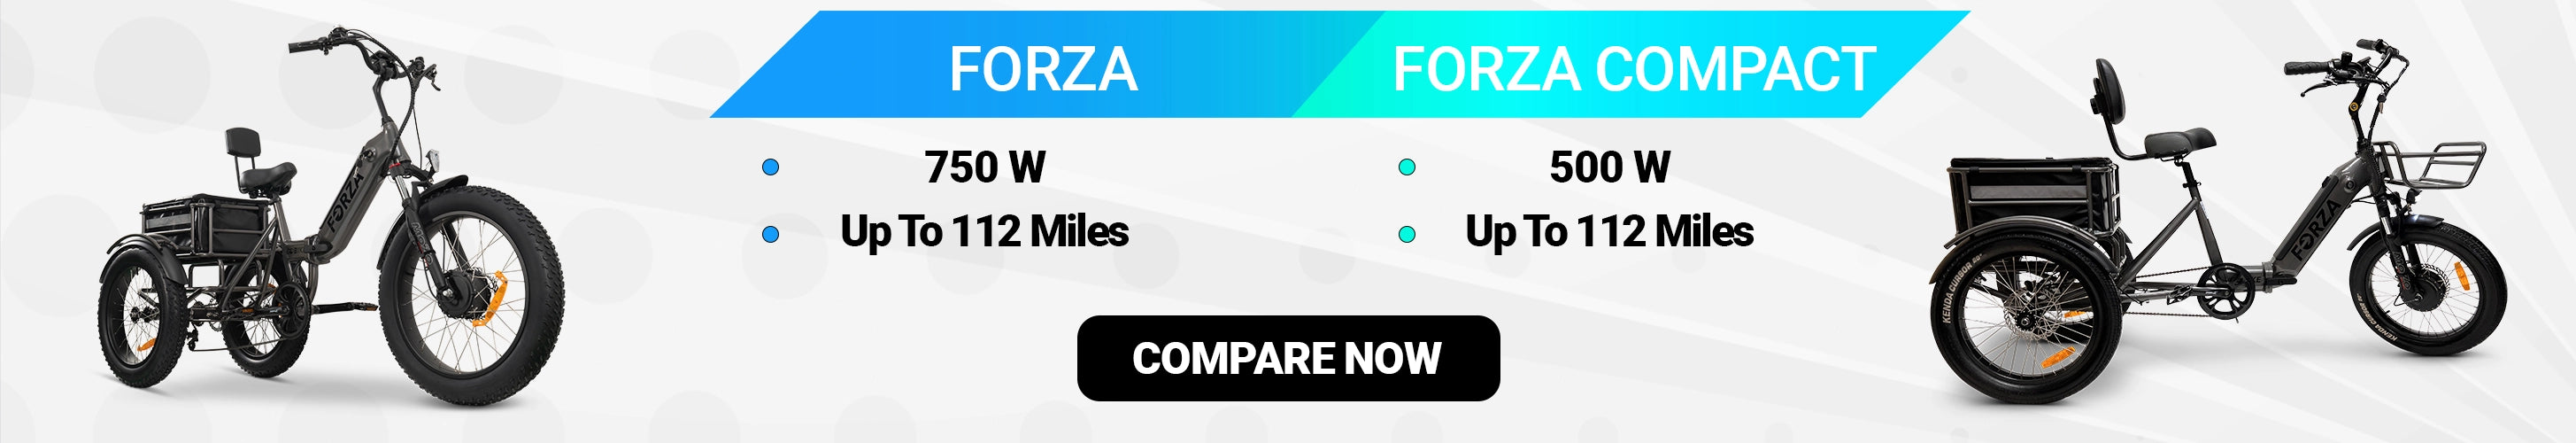 Forza compare Forza Compact Trikes